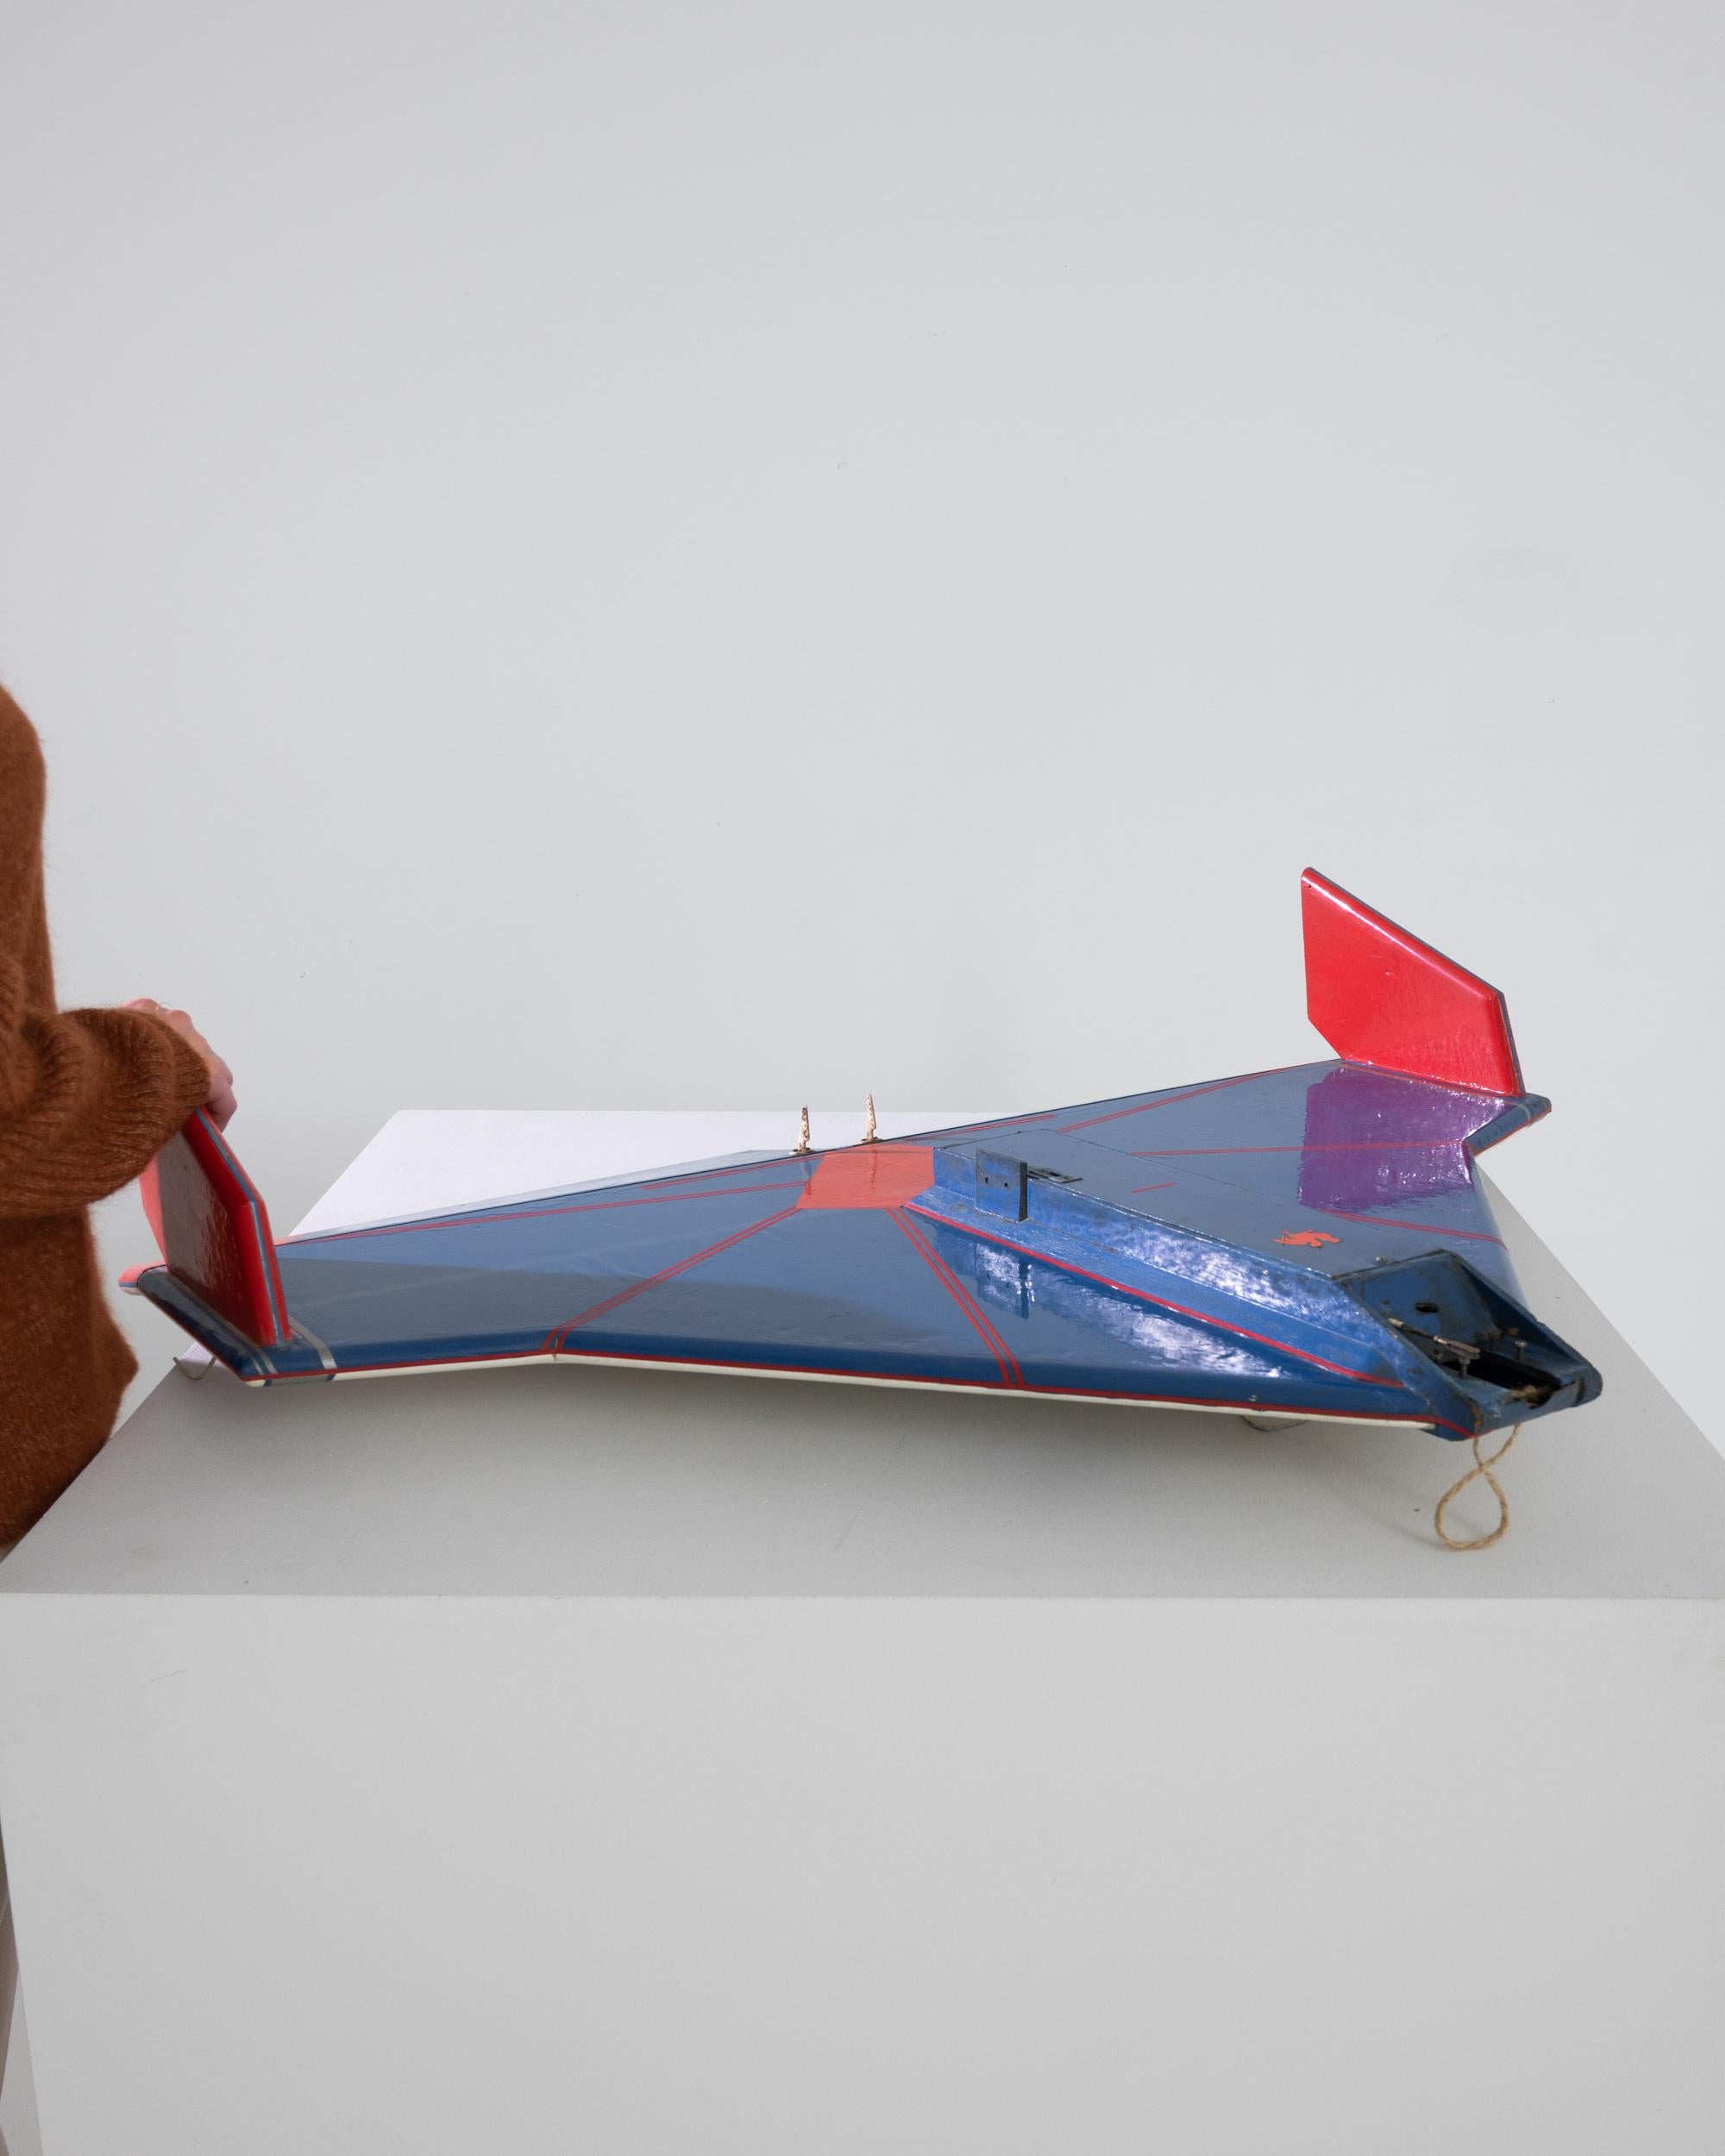 Dieses belgische Modellflugzeug aus dem 20. Jahrhundert ist ein bemerkenswertes Sammlerstück, das mit seinem auffallend blauen Rumpf und den kräftigen roten Akzenten den Geist der historischen Luftfahrt einfängt. Das mit viel Liebe zum Detail